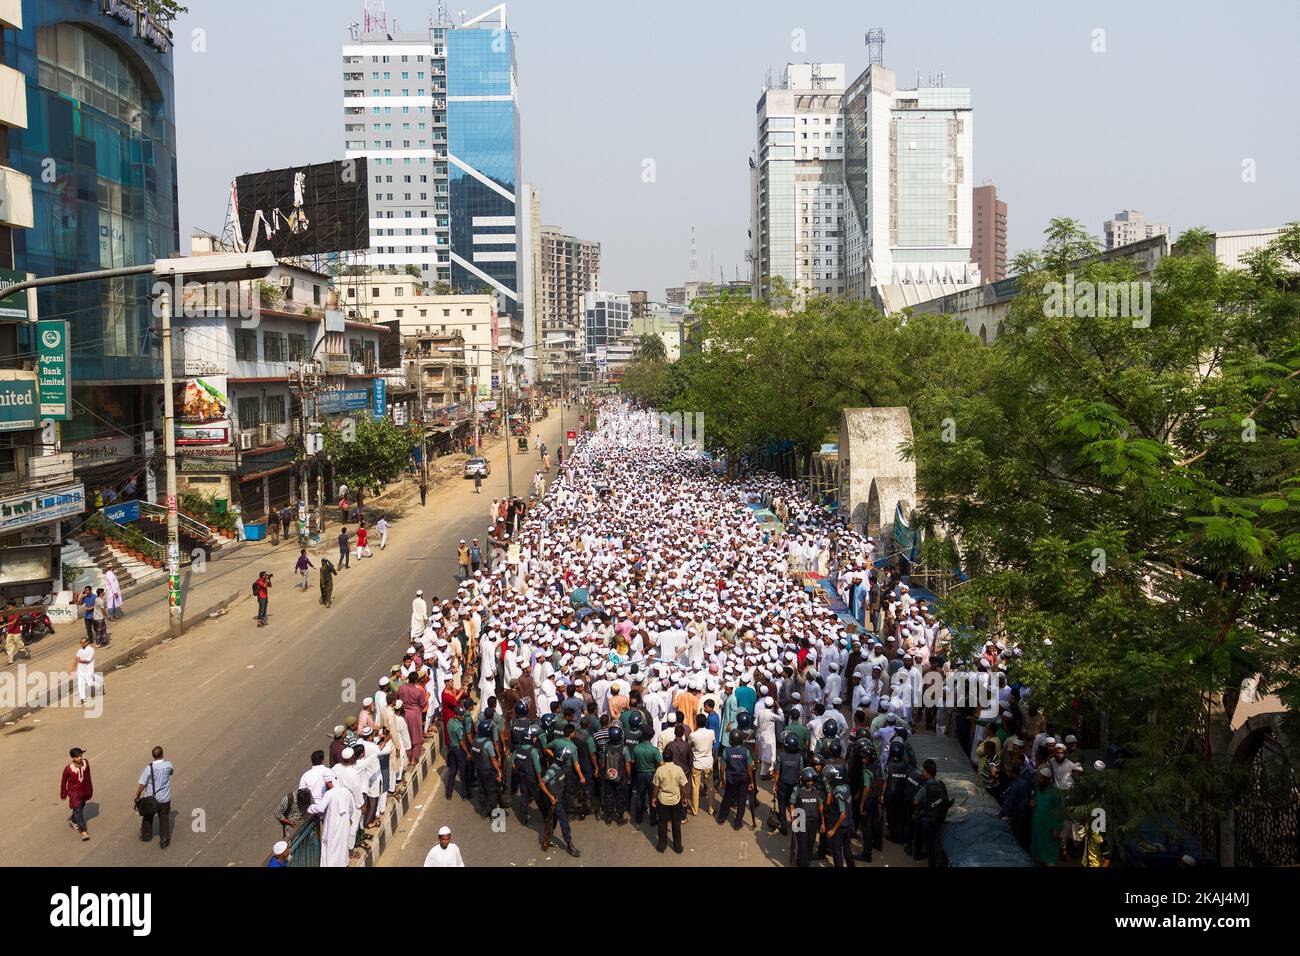 Les islamistes radicaux du Bangladesh protestent devant la mosquée nationale Baitul Mukarram à Dhaka, sur 25 mars 2016. Des milliers d'islamistes radicaux bangladais se sont rassemblés dans tout le pays contre une initiative « infidèles » visant à faire de l'islam la religion d'État dans la nation à majorité musulmane. Près de sept mille activistes du groupe radical Hefazat-e-Islam ont porté des bannières et des festons et ont scandé des slogans sur les routes de Dhaka après la prière du vendredi qui a fait l'orguage du gouvernement pour ne pas avoir pris des 'actions loucientes' pour mettre fin à la 'moquerie' contre l'Islam, religion de près de 90 pour cent de la population de la co Banque D'Images